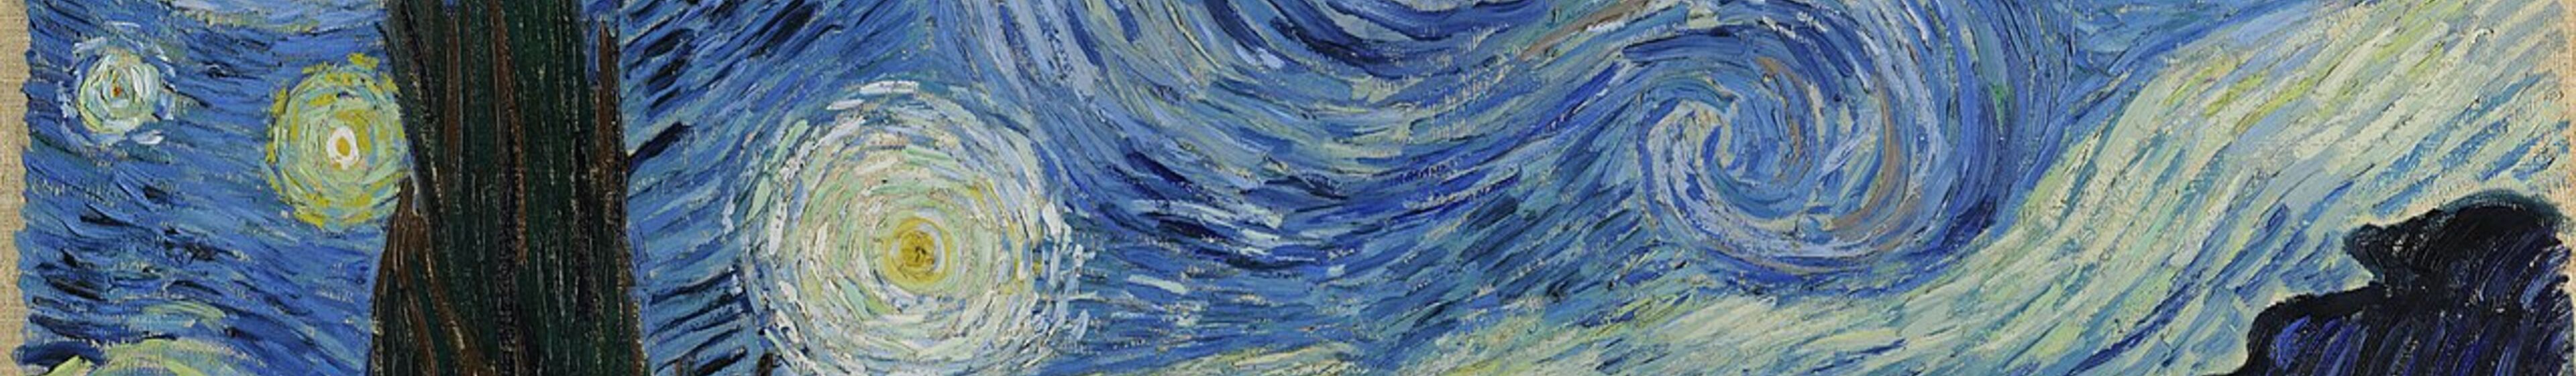 Sternennacht_Vincent van Gogh